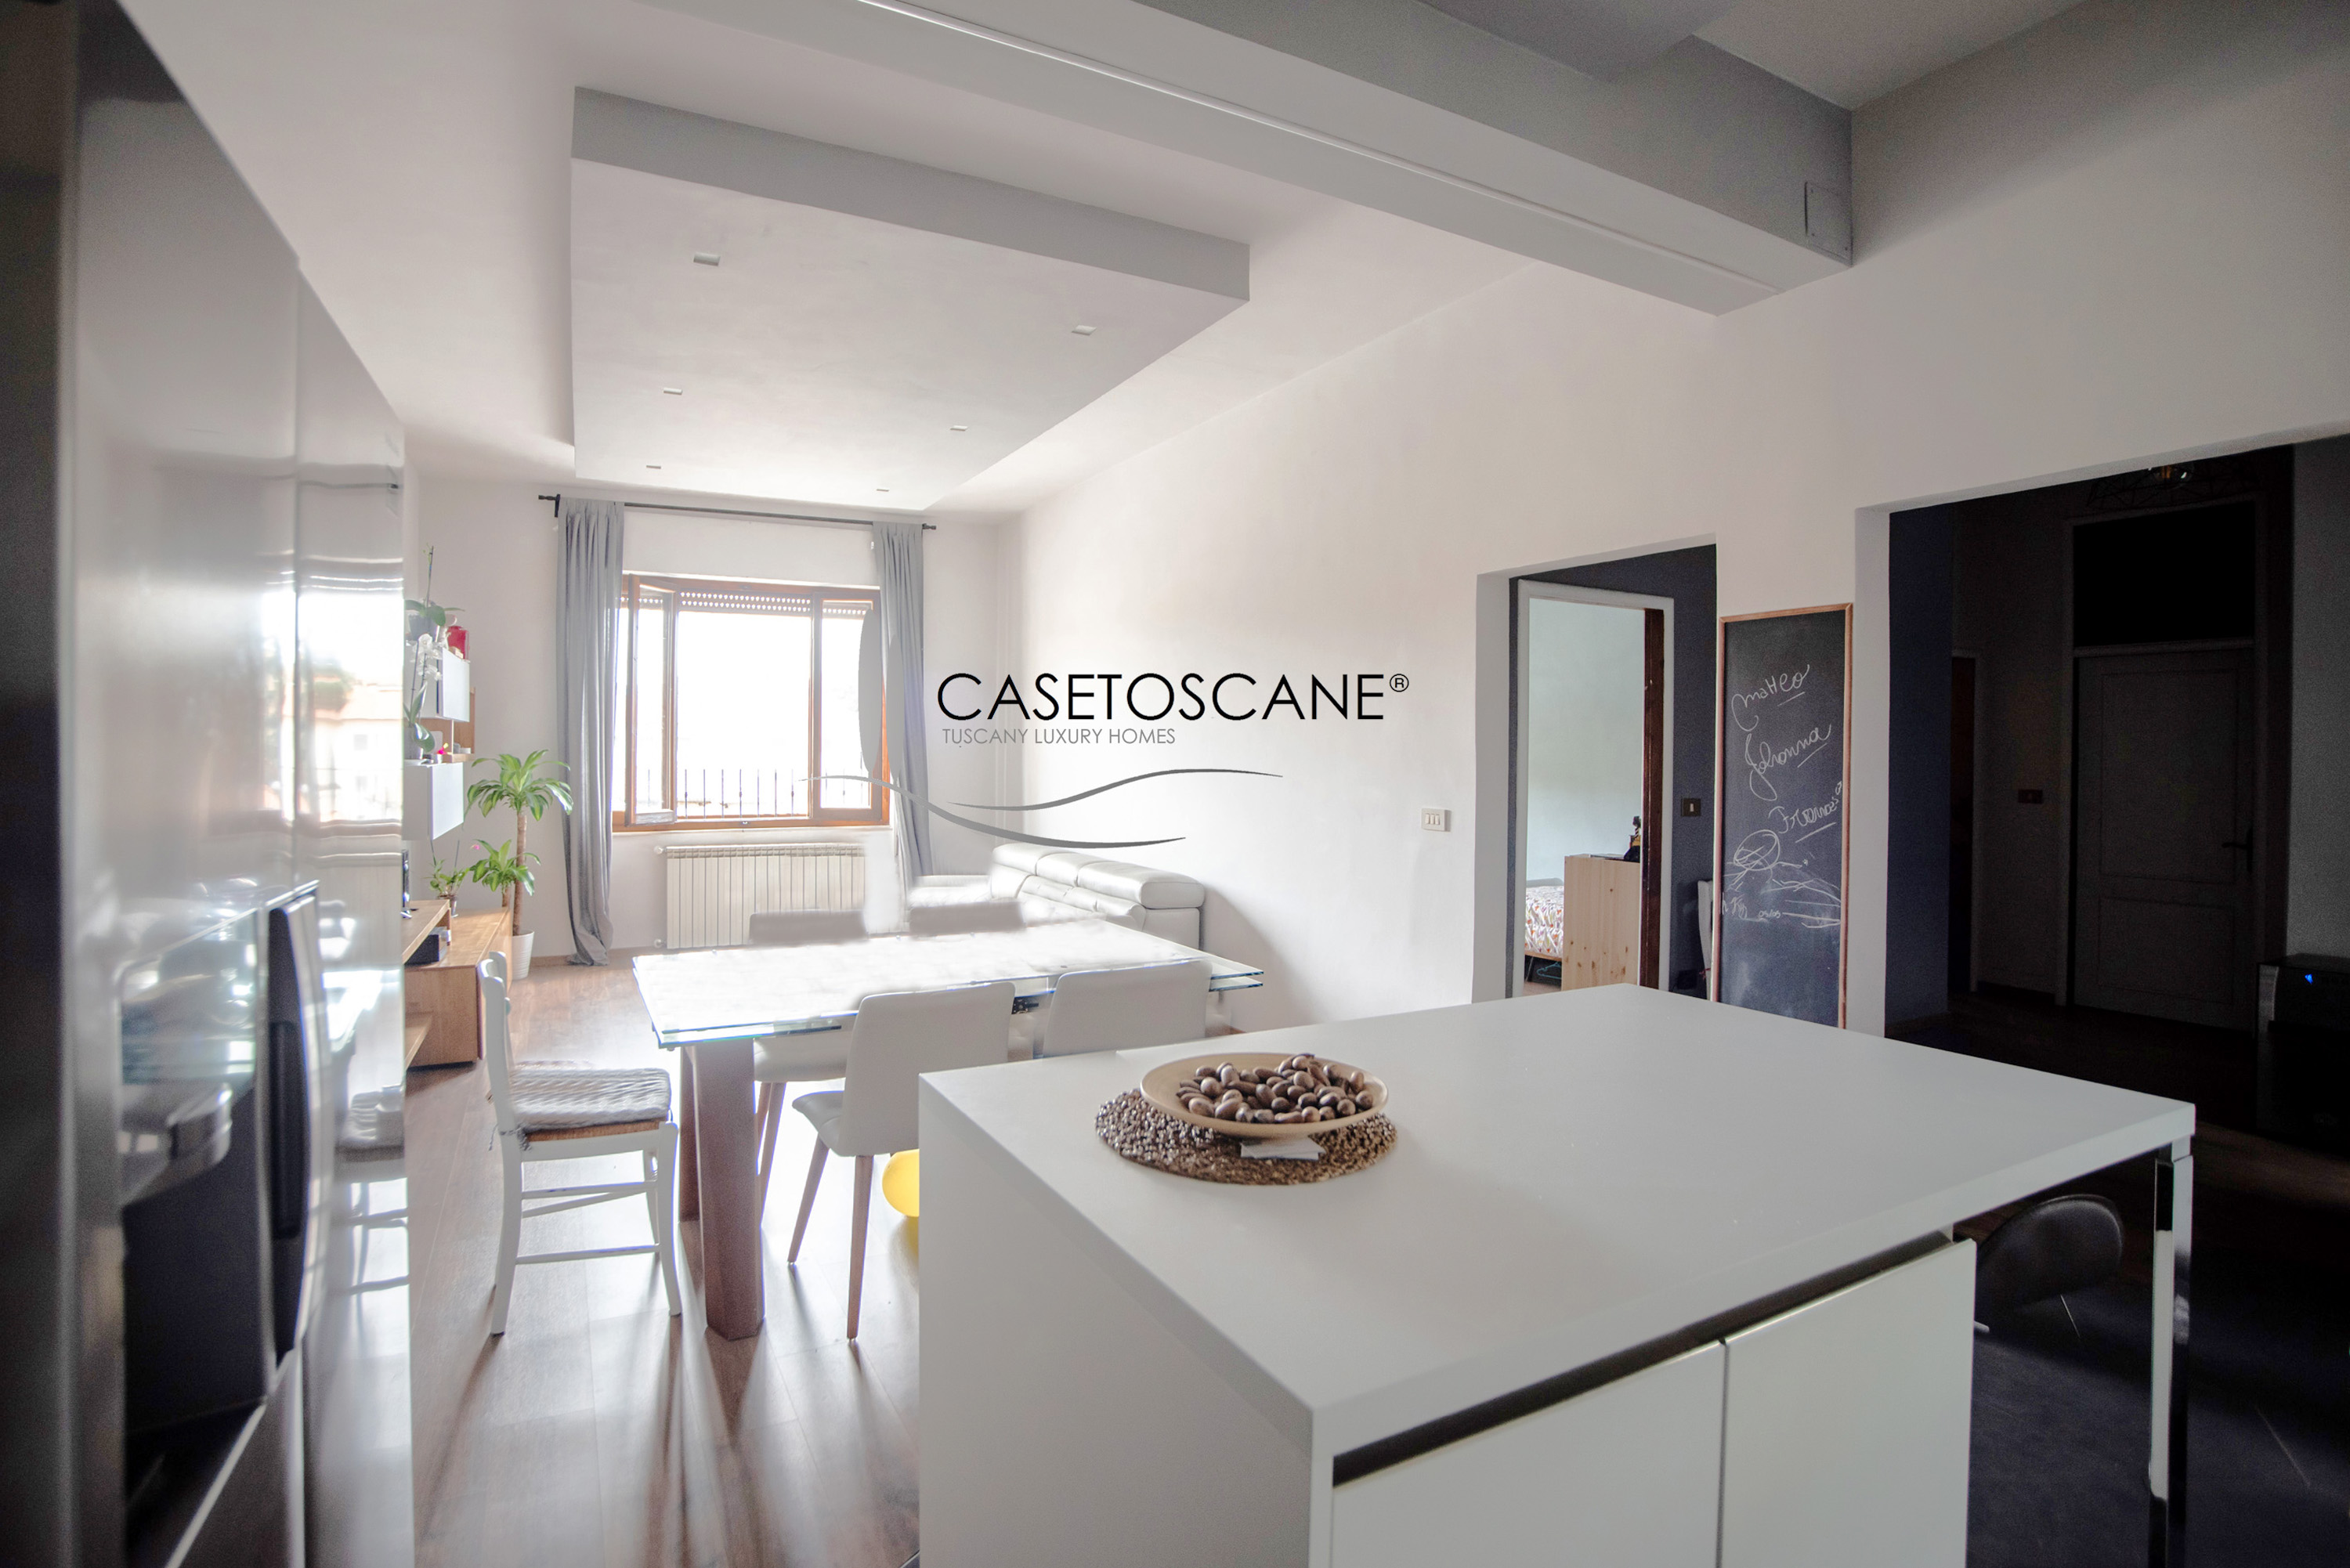 A707 - Ottimo appartamento ristrutturato di circa mq.90 posto al 2°P con affaccio diretto su Piazza Sant'Agostino nel centro storico di Arezzo.